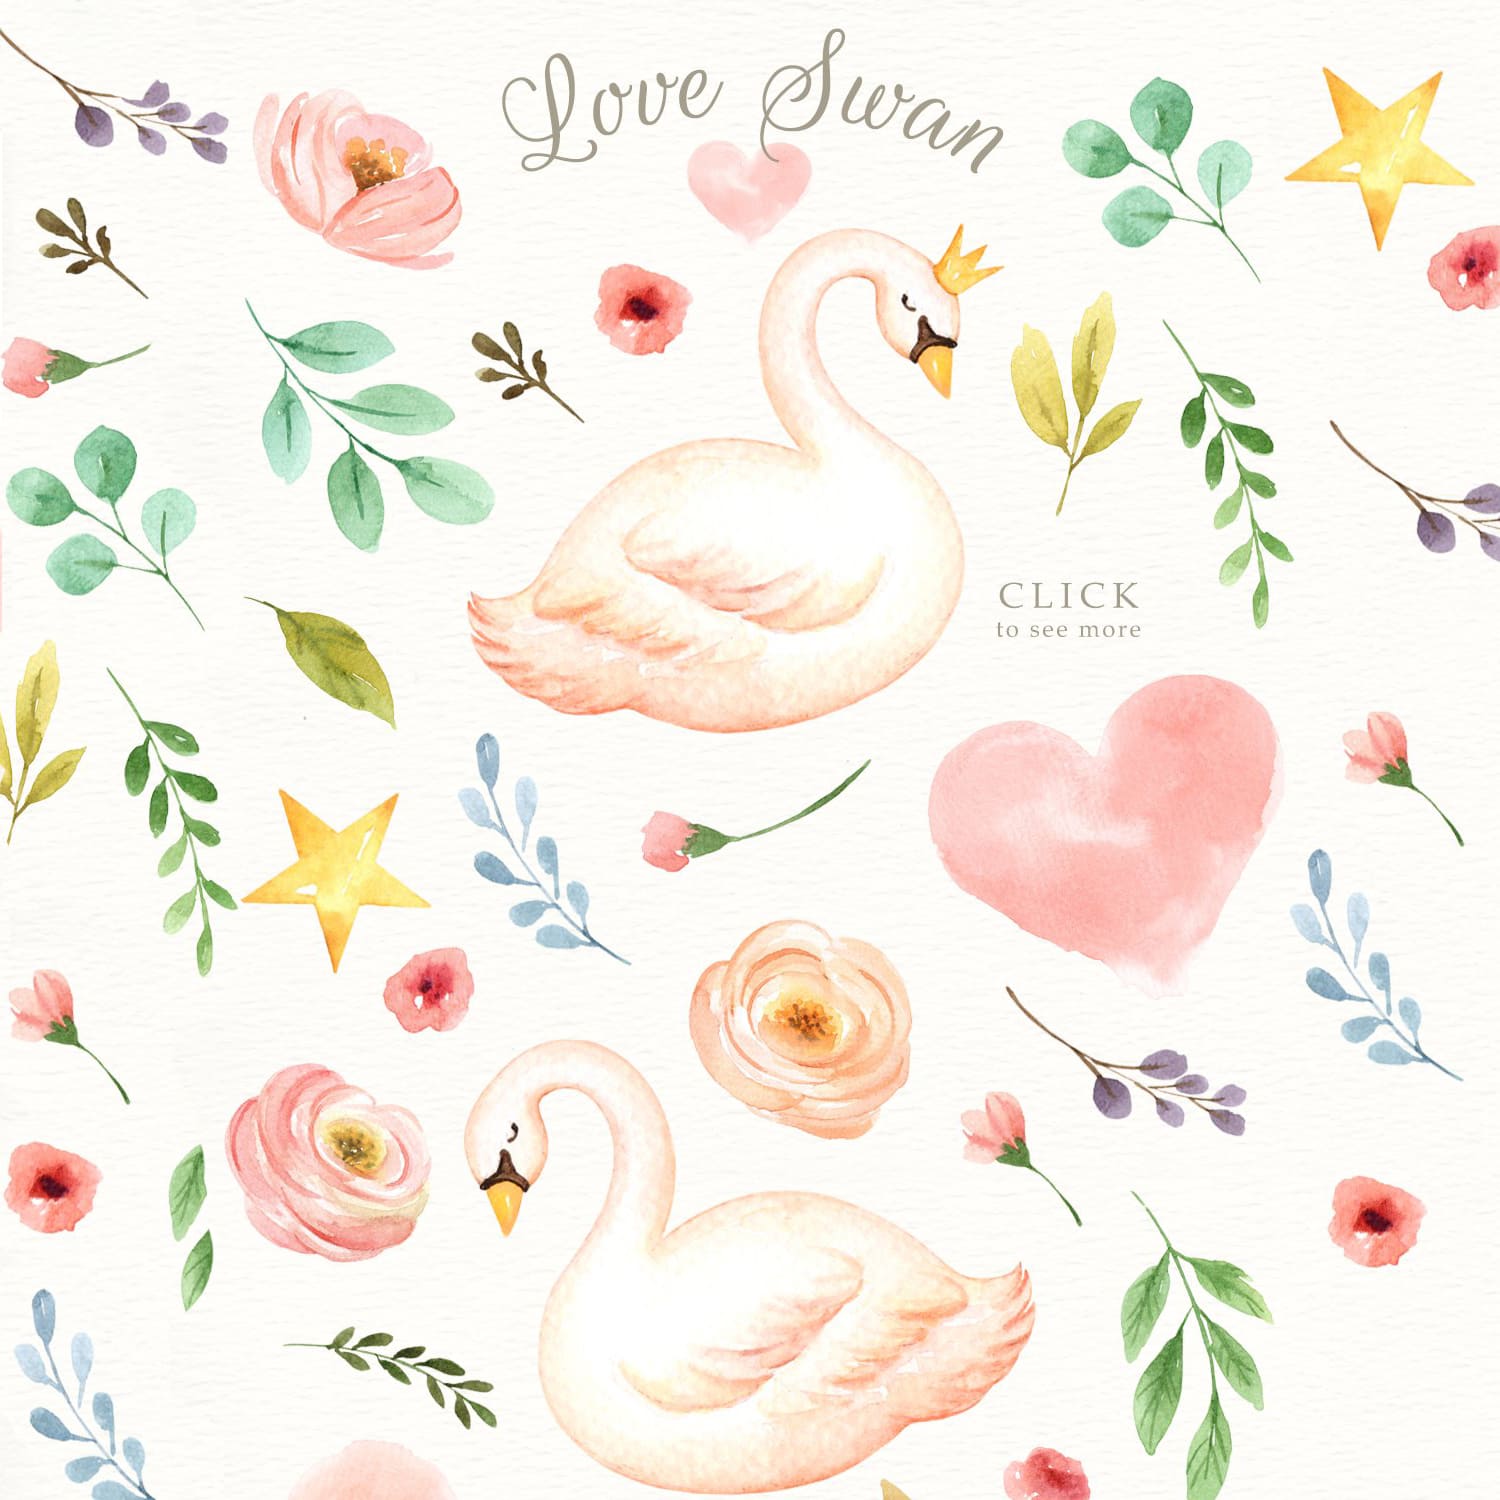 Love Swan Watercolor Clip Art cover.